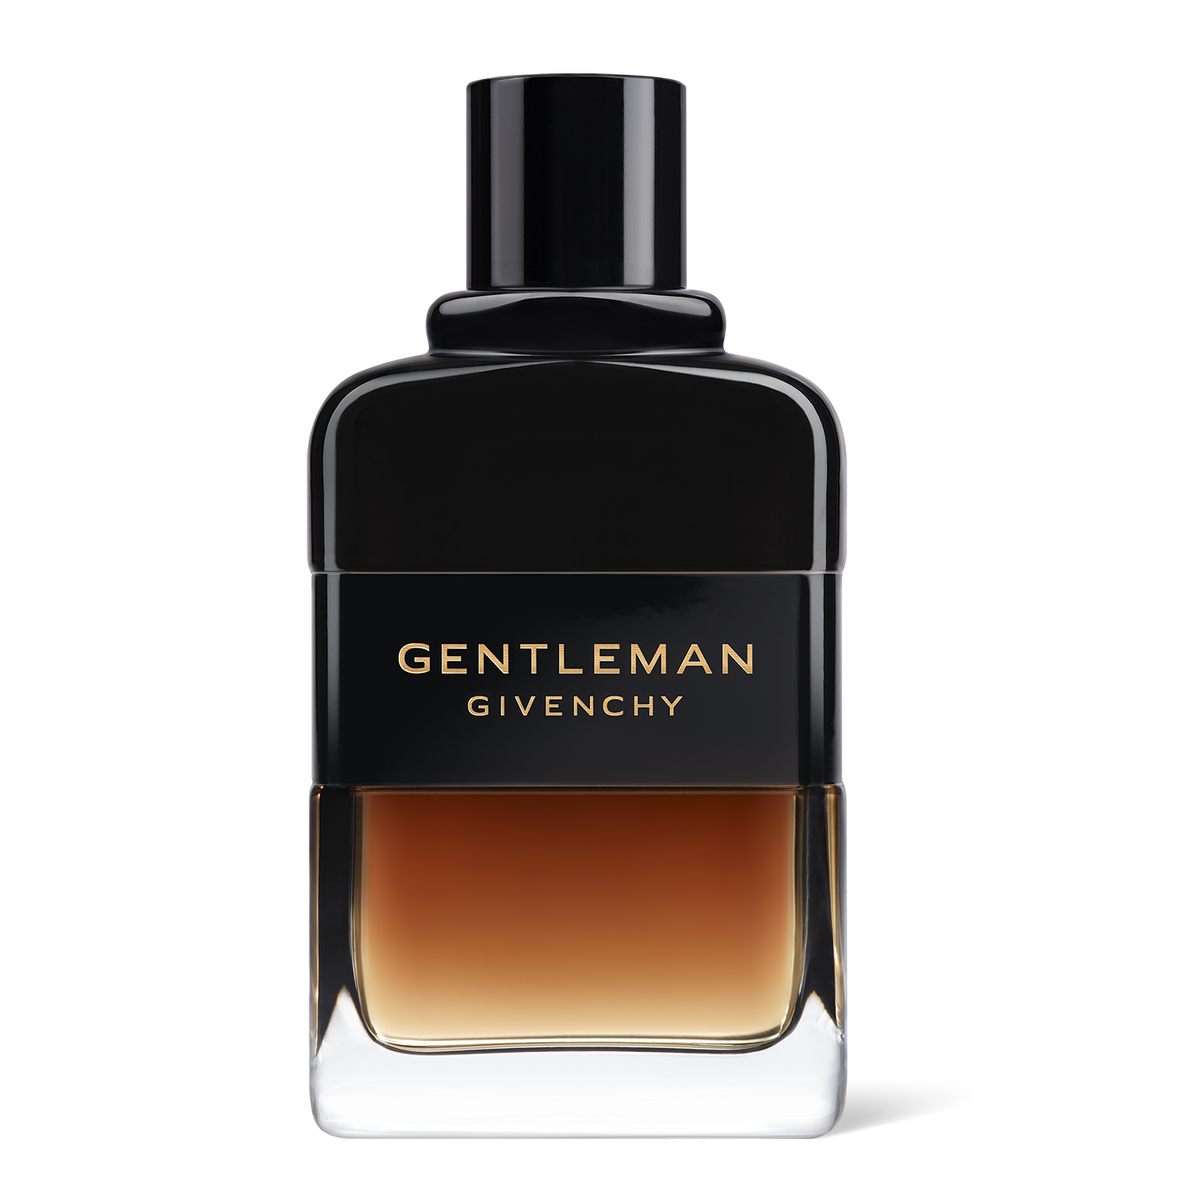 Givenchy Gentleman Reserve Privee Cologne for Men SpadezStore